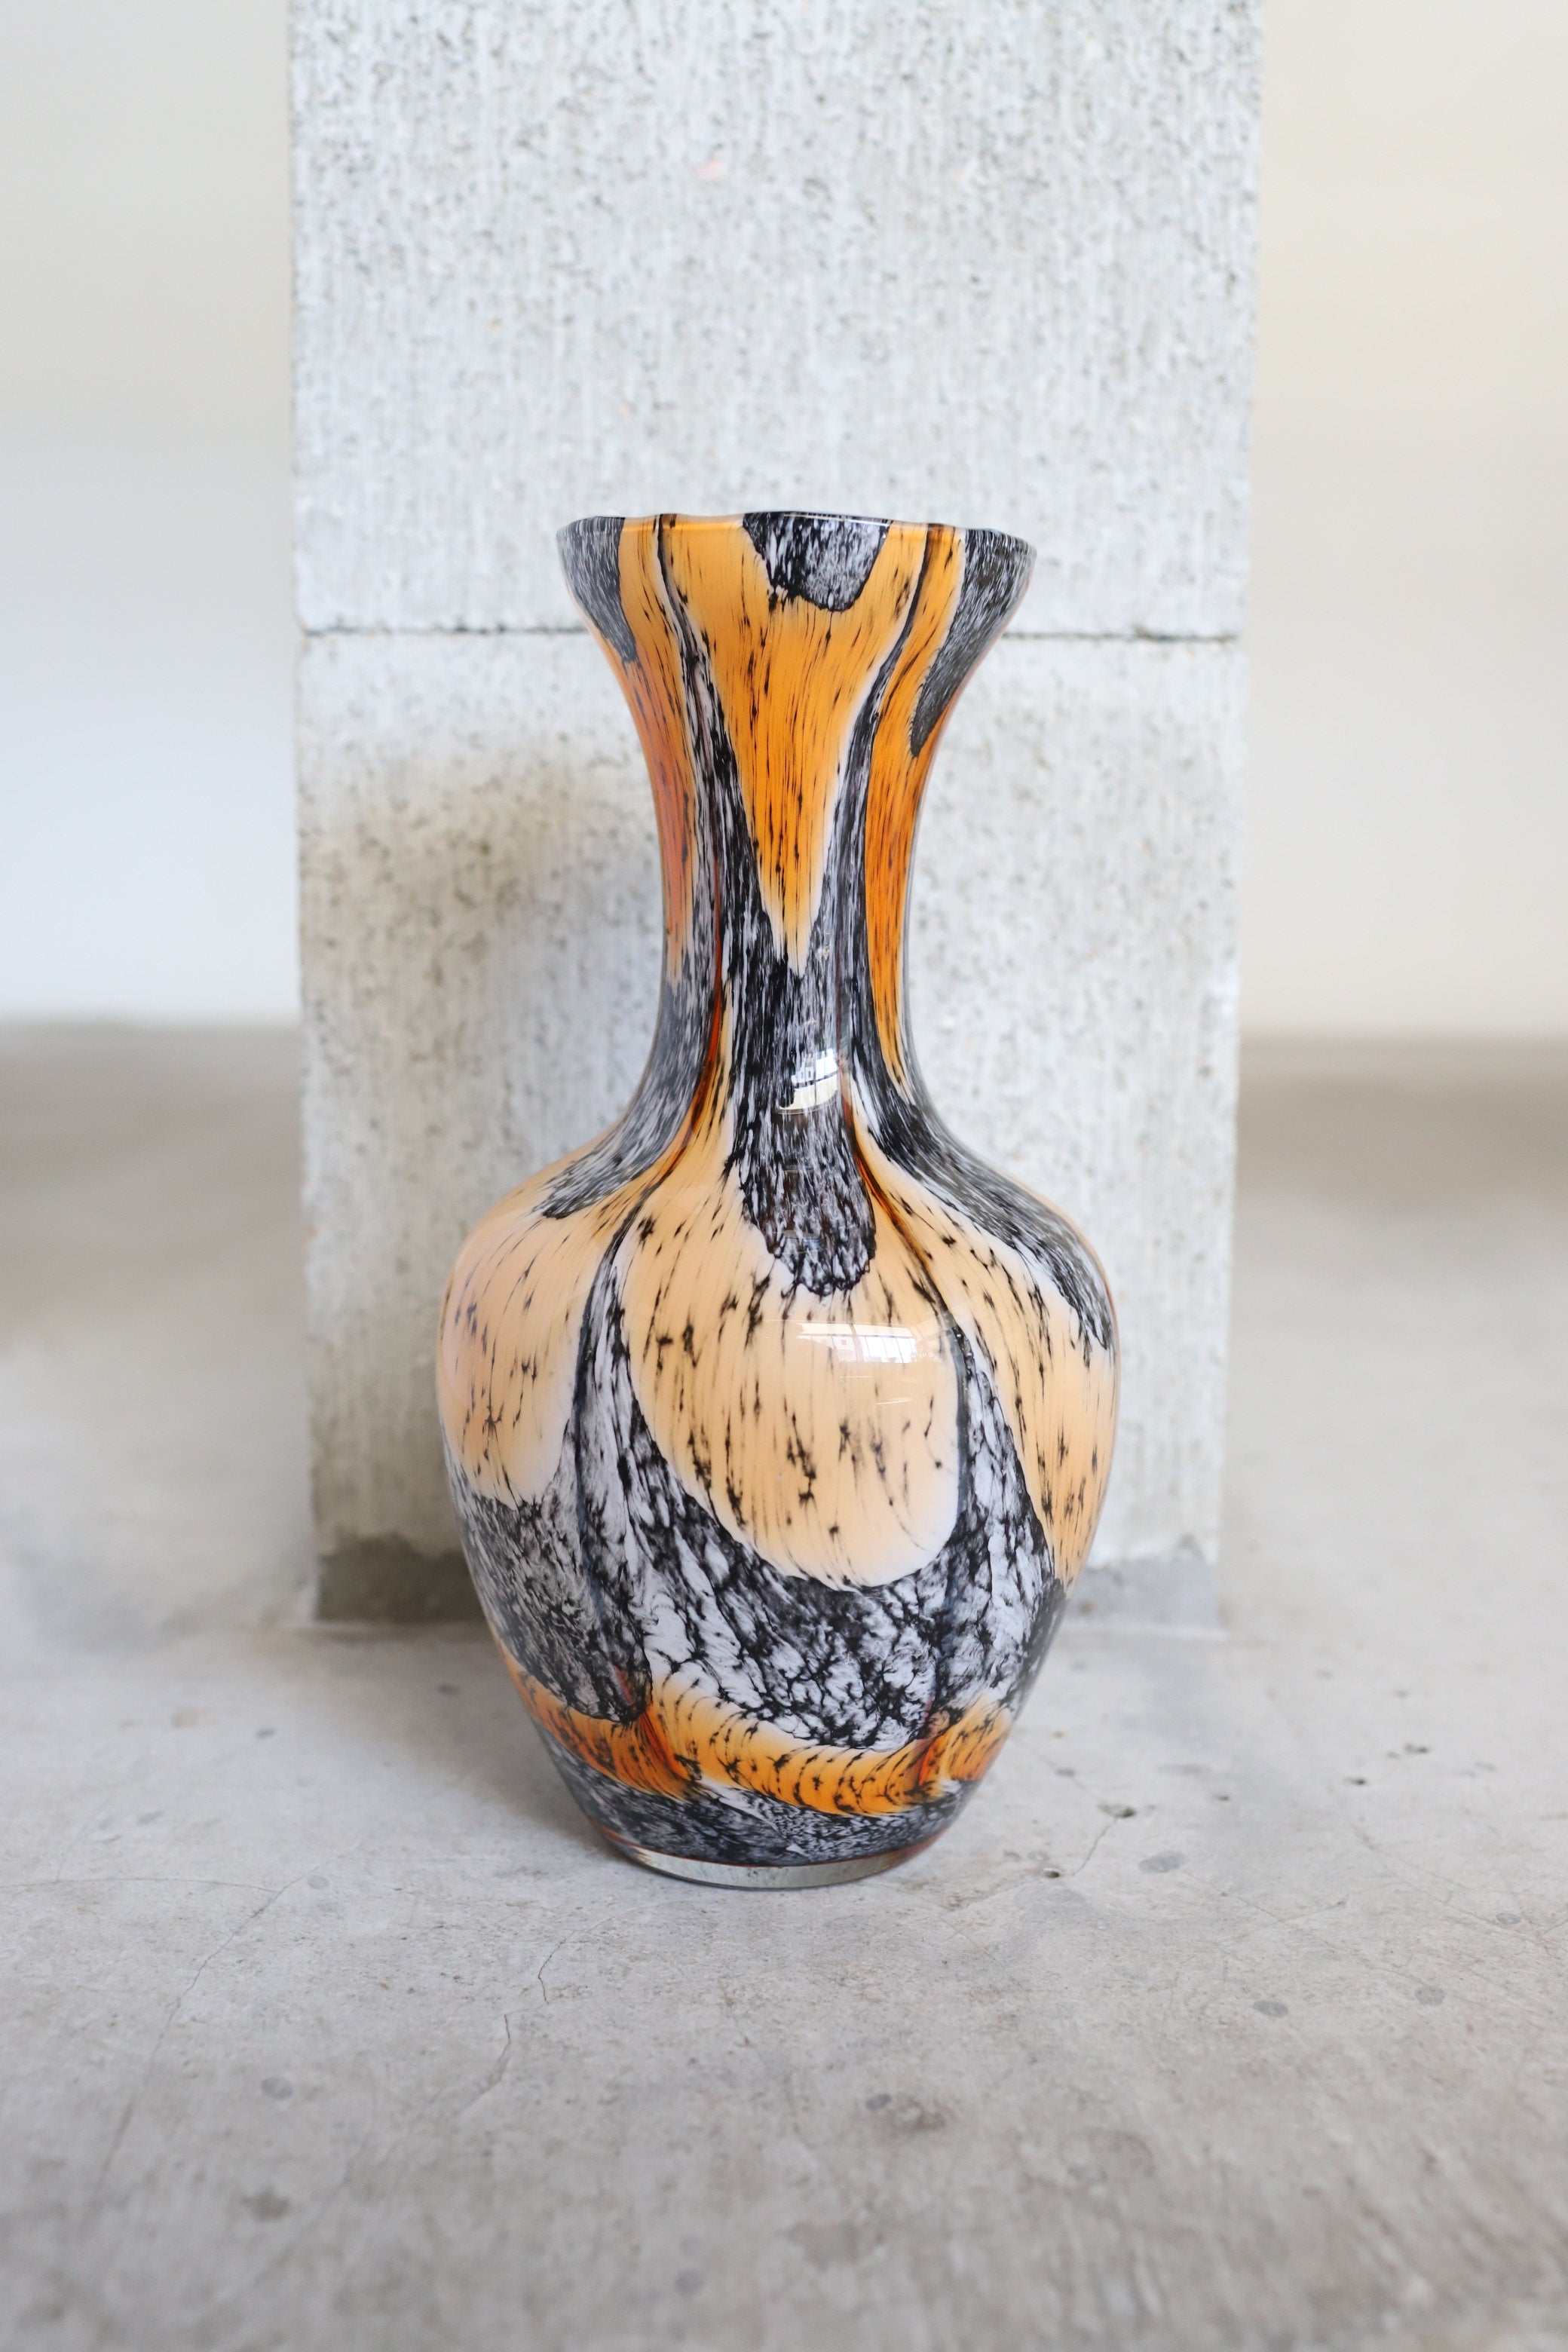 February Vase #11